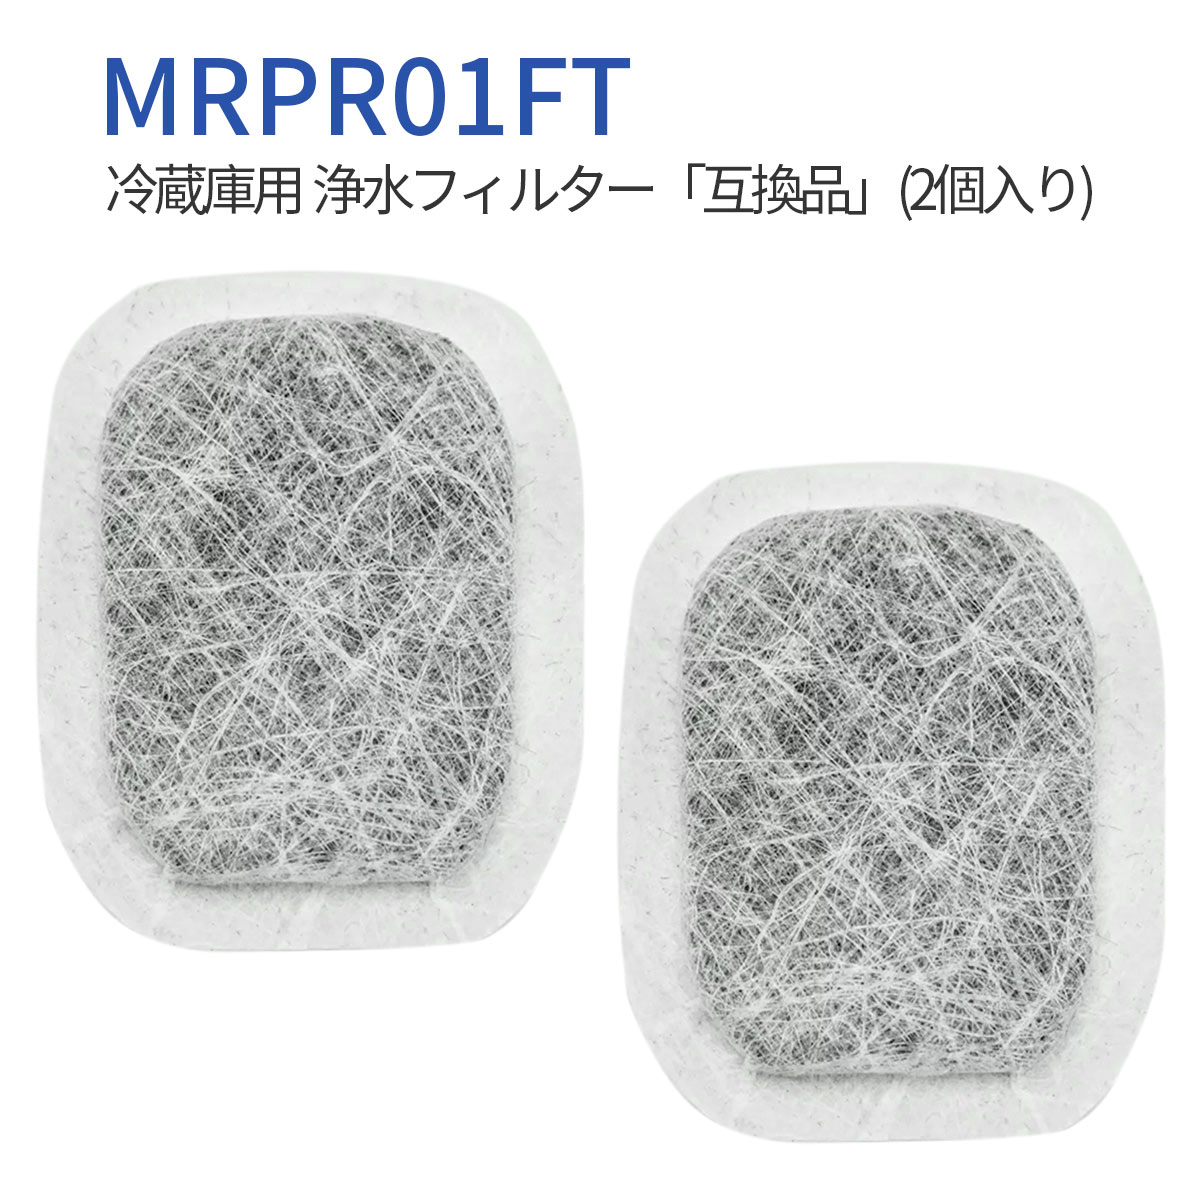 冷蔵庫 製氷フィルター mrpr-01ft 三菱